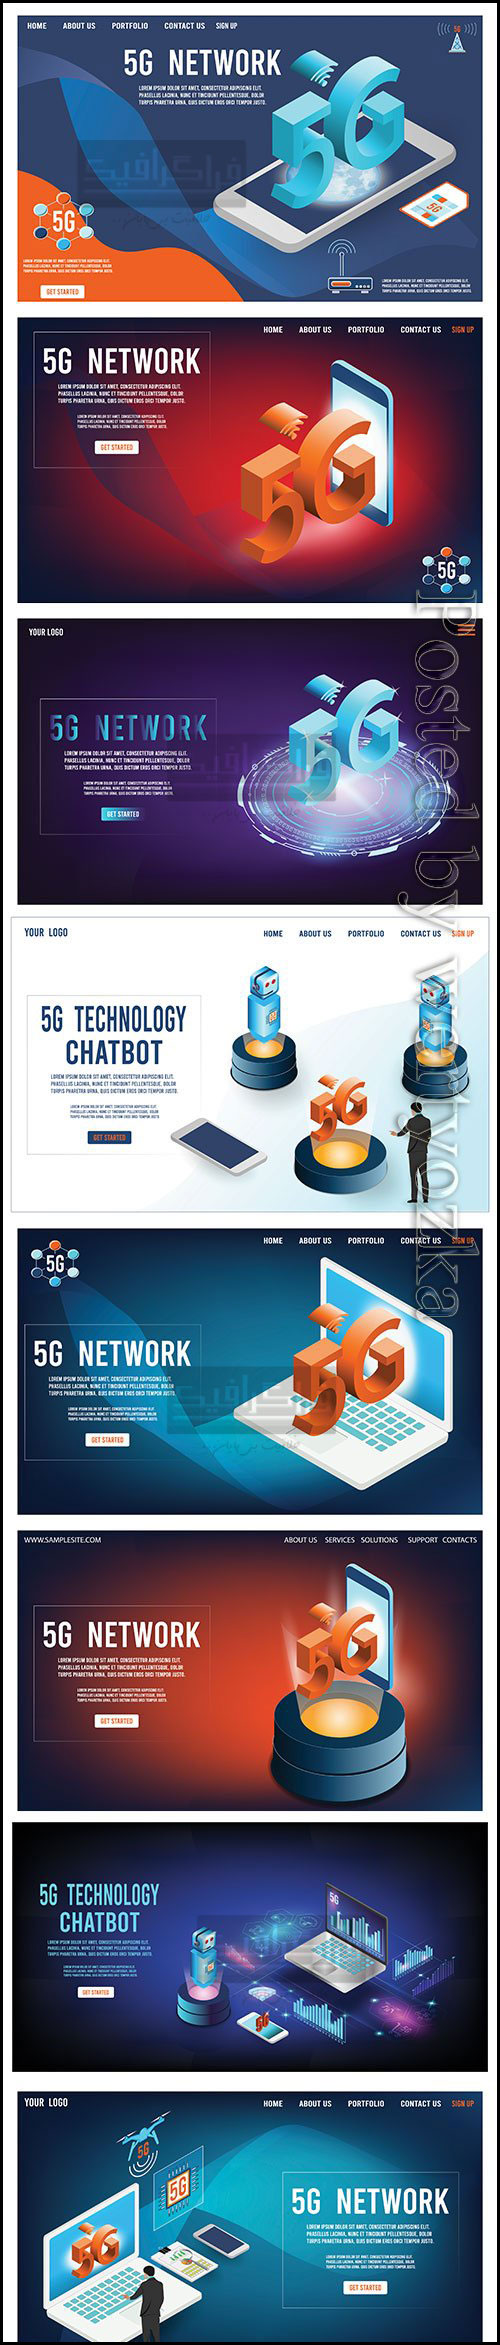 دانلود وکتور های تبلیغاتی شبکه مخابراتی 5G